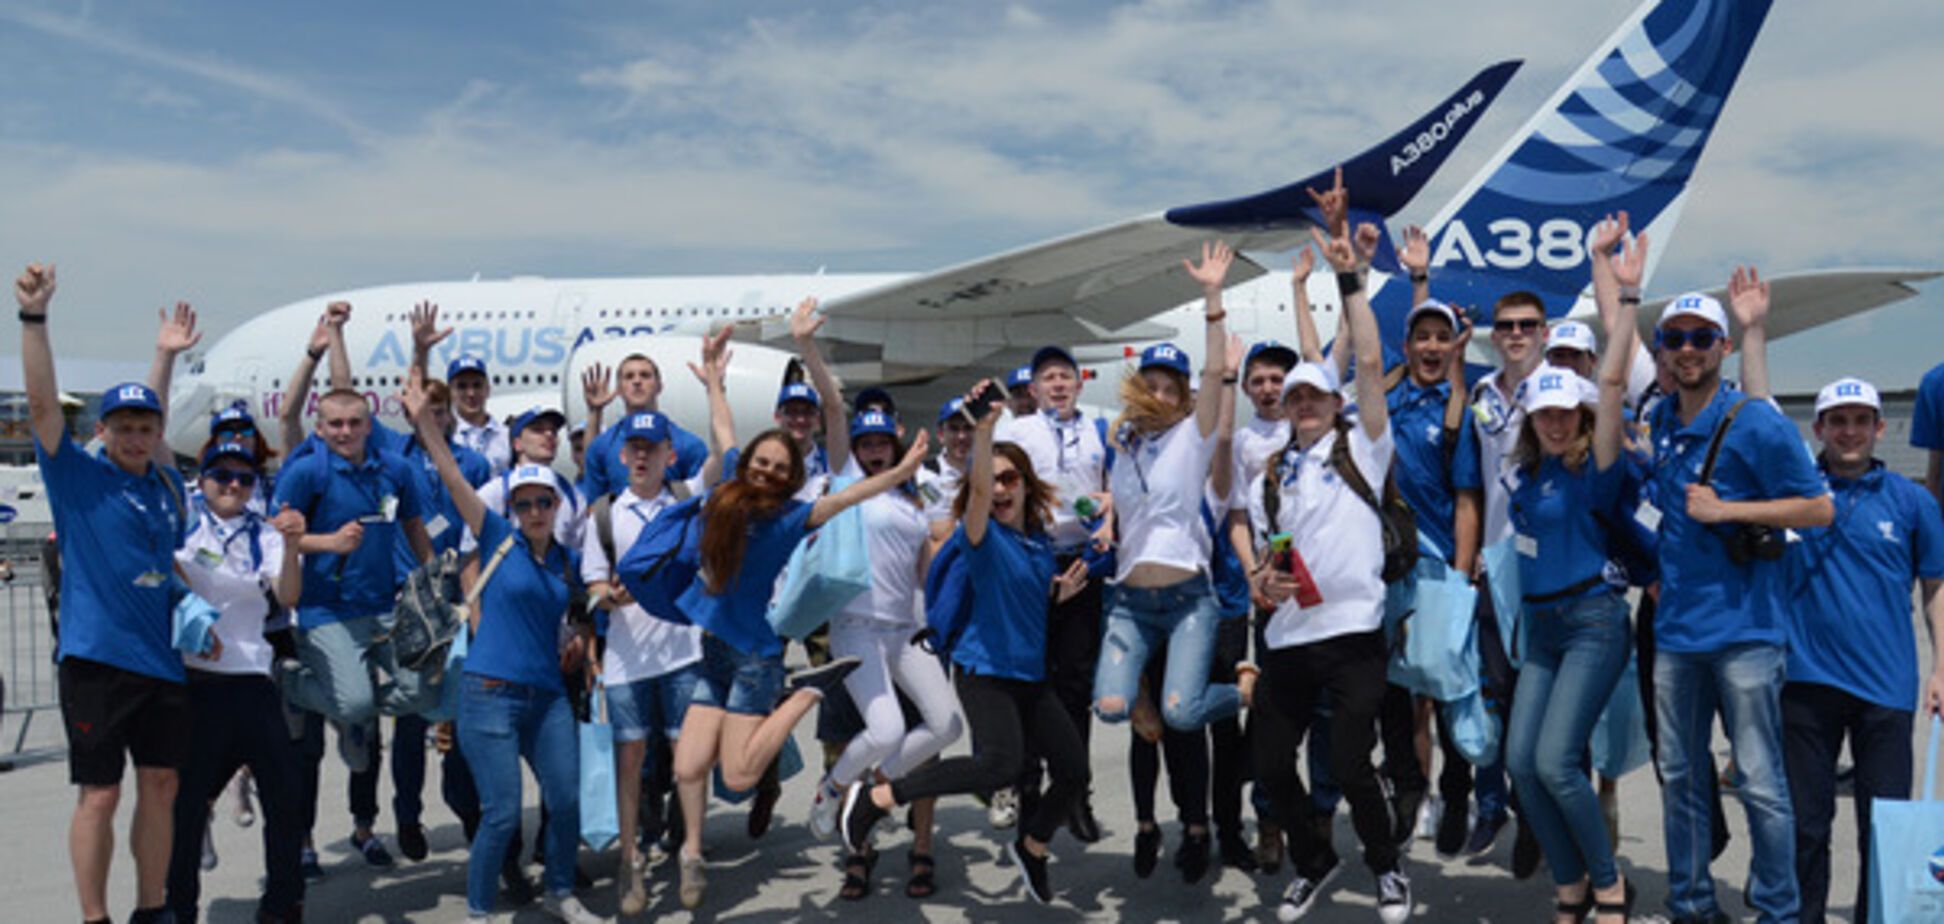 Україна - це звучить гордо: кращі студенти країни відвідали найбільший авіасалон Ле Бурже